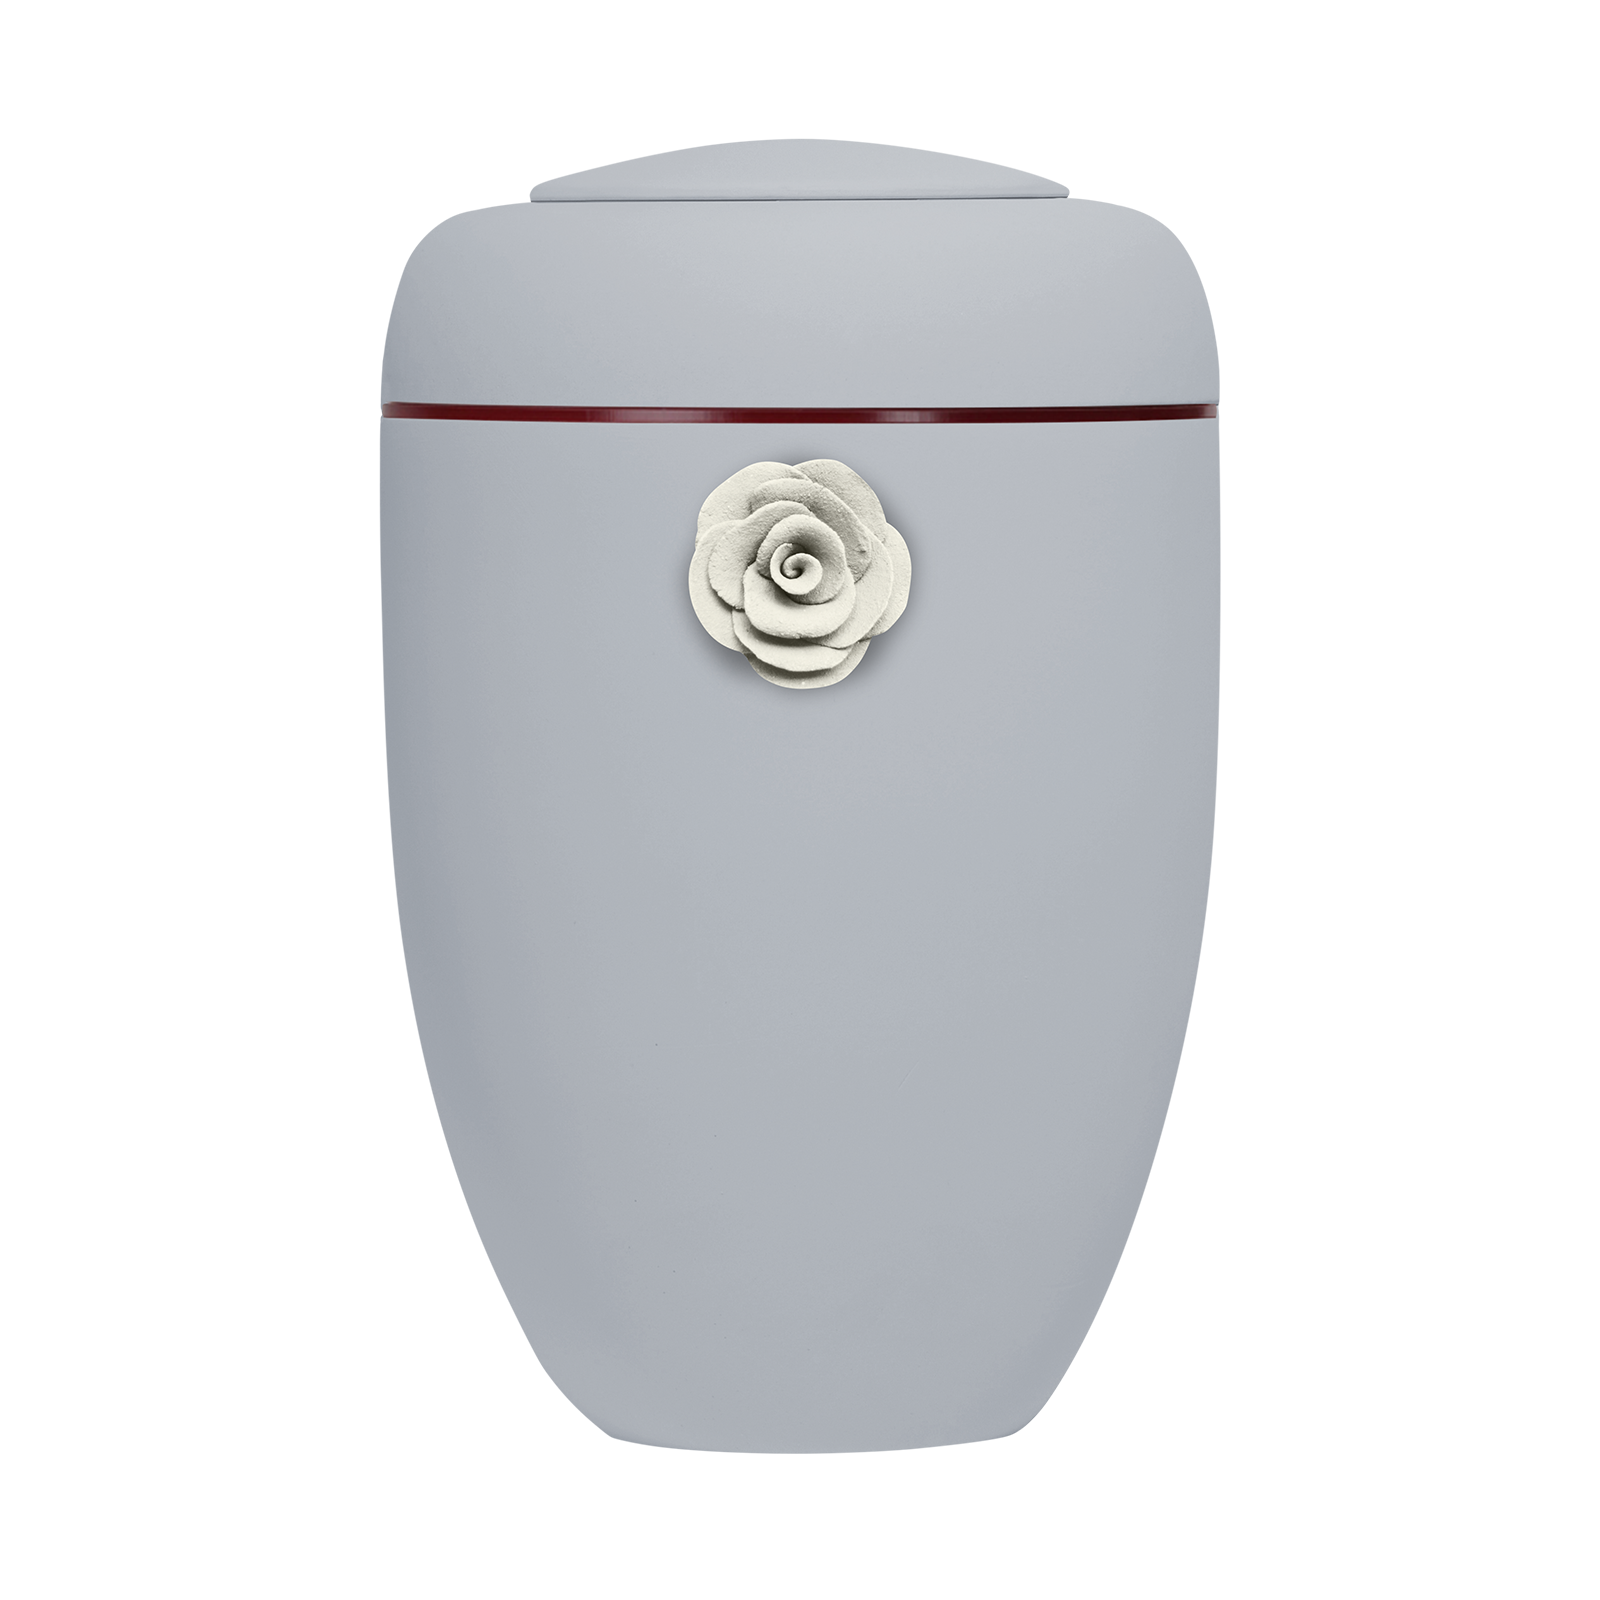 Hellgraue Symbol-Urne mit weißer Tonrose und roter Plexiglasscheibe